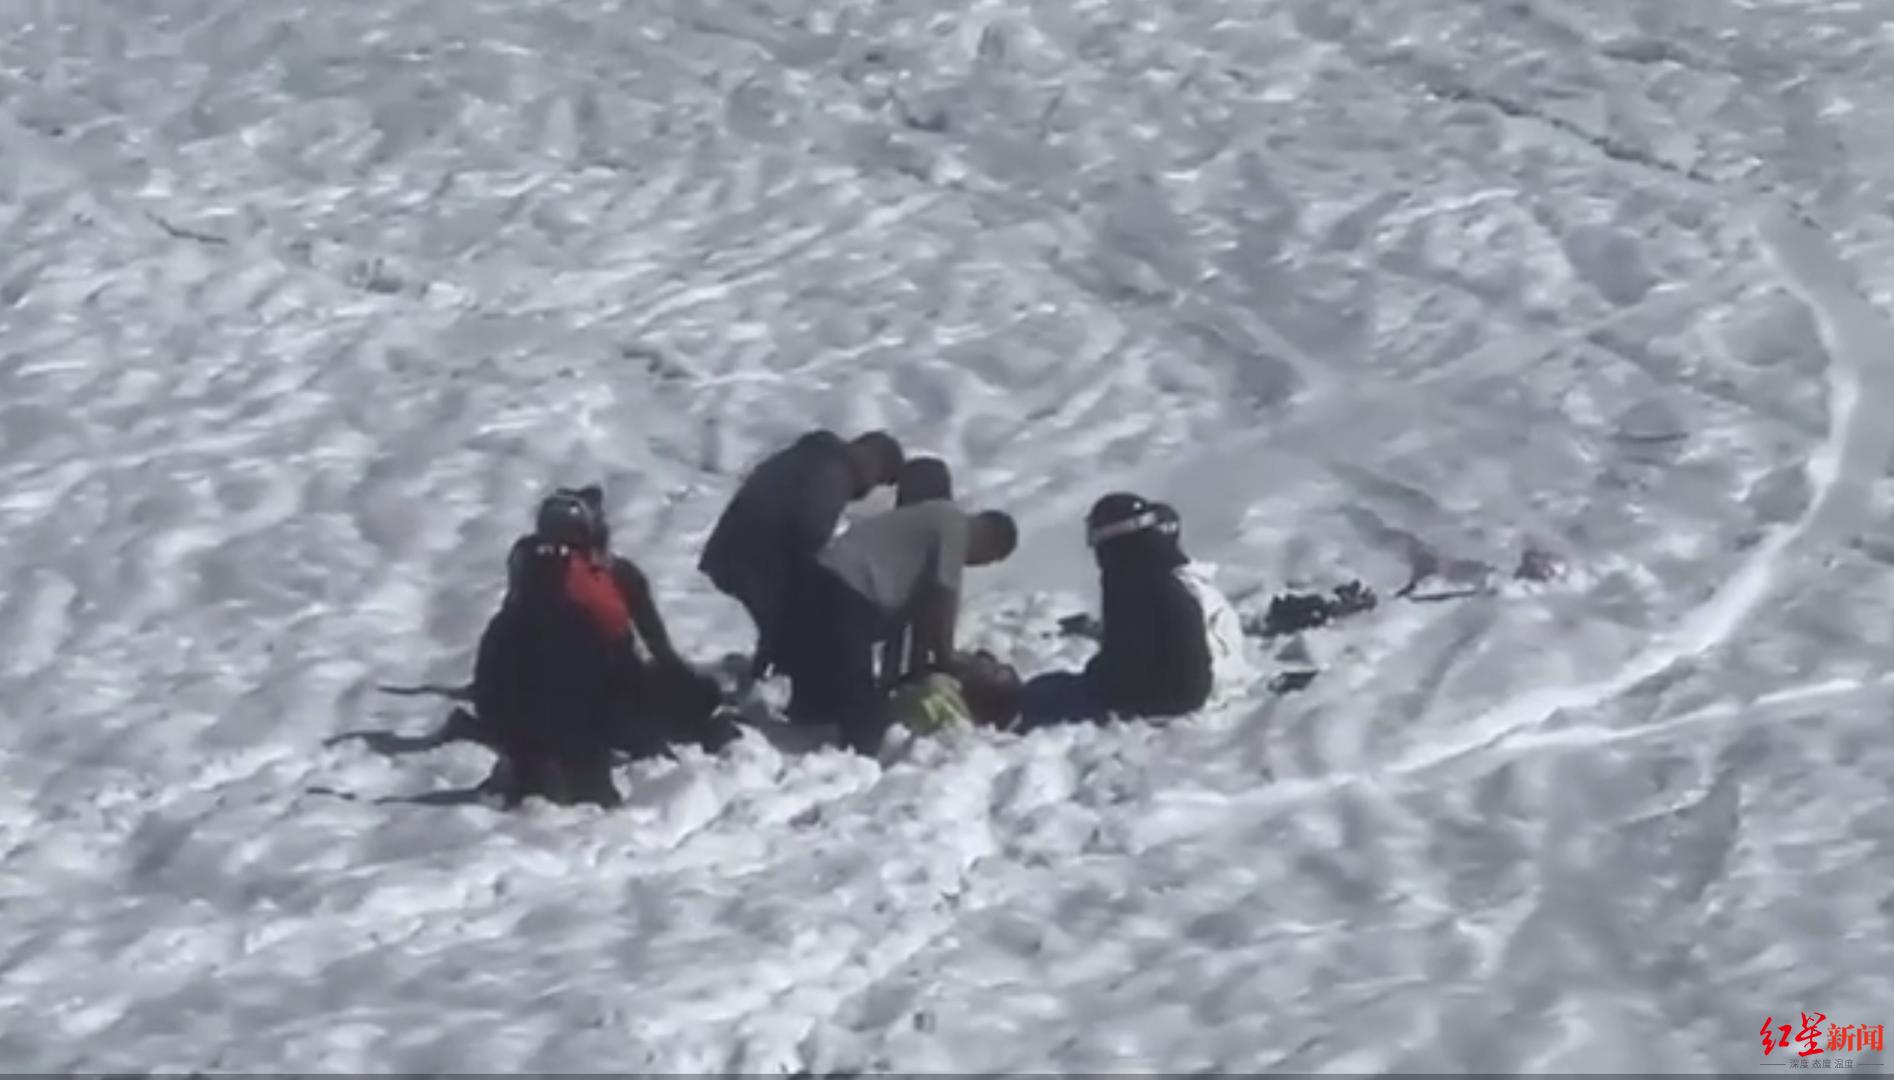 新疆可可托海滑雪场一男子滑至野雪区受伤身亡，当地上月曾发公告严禁滑野雪